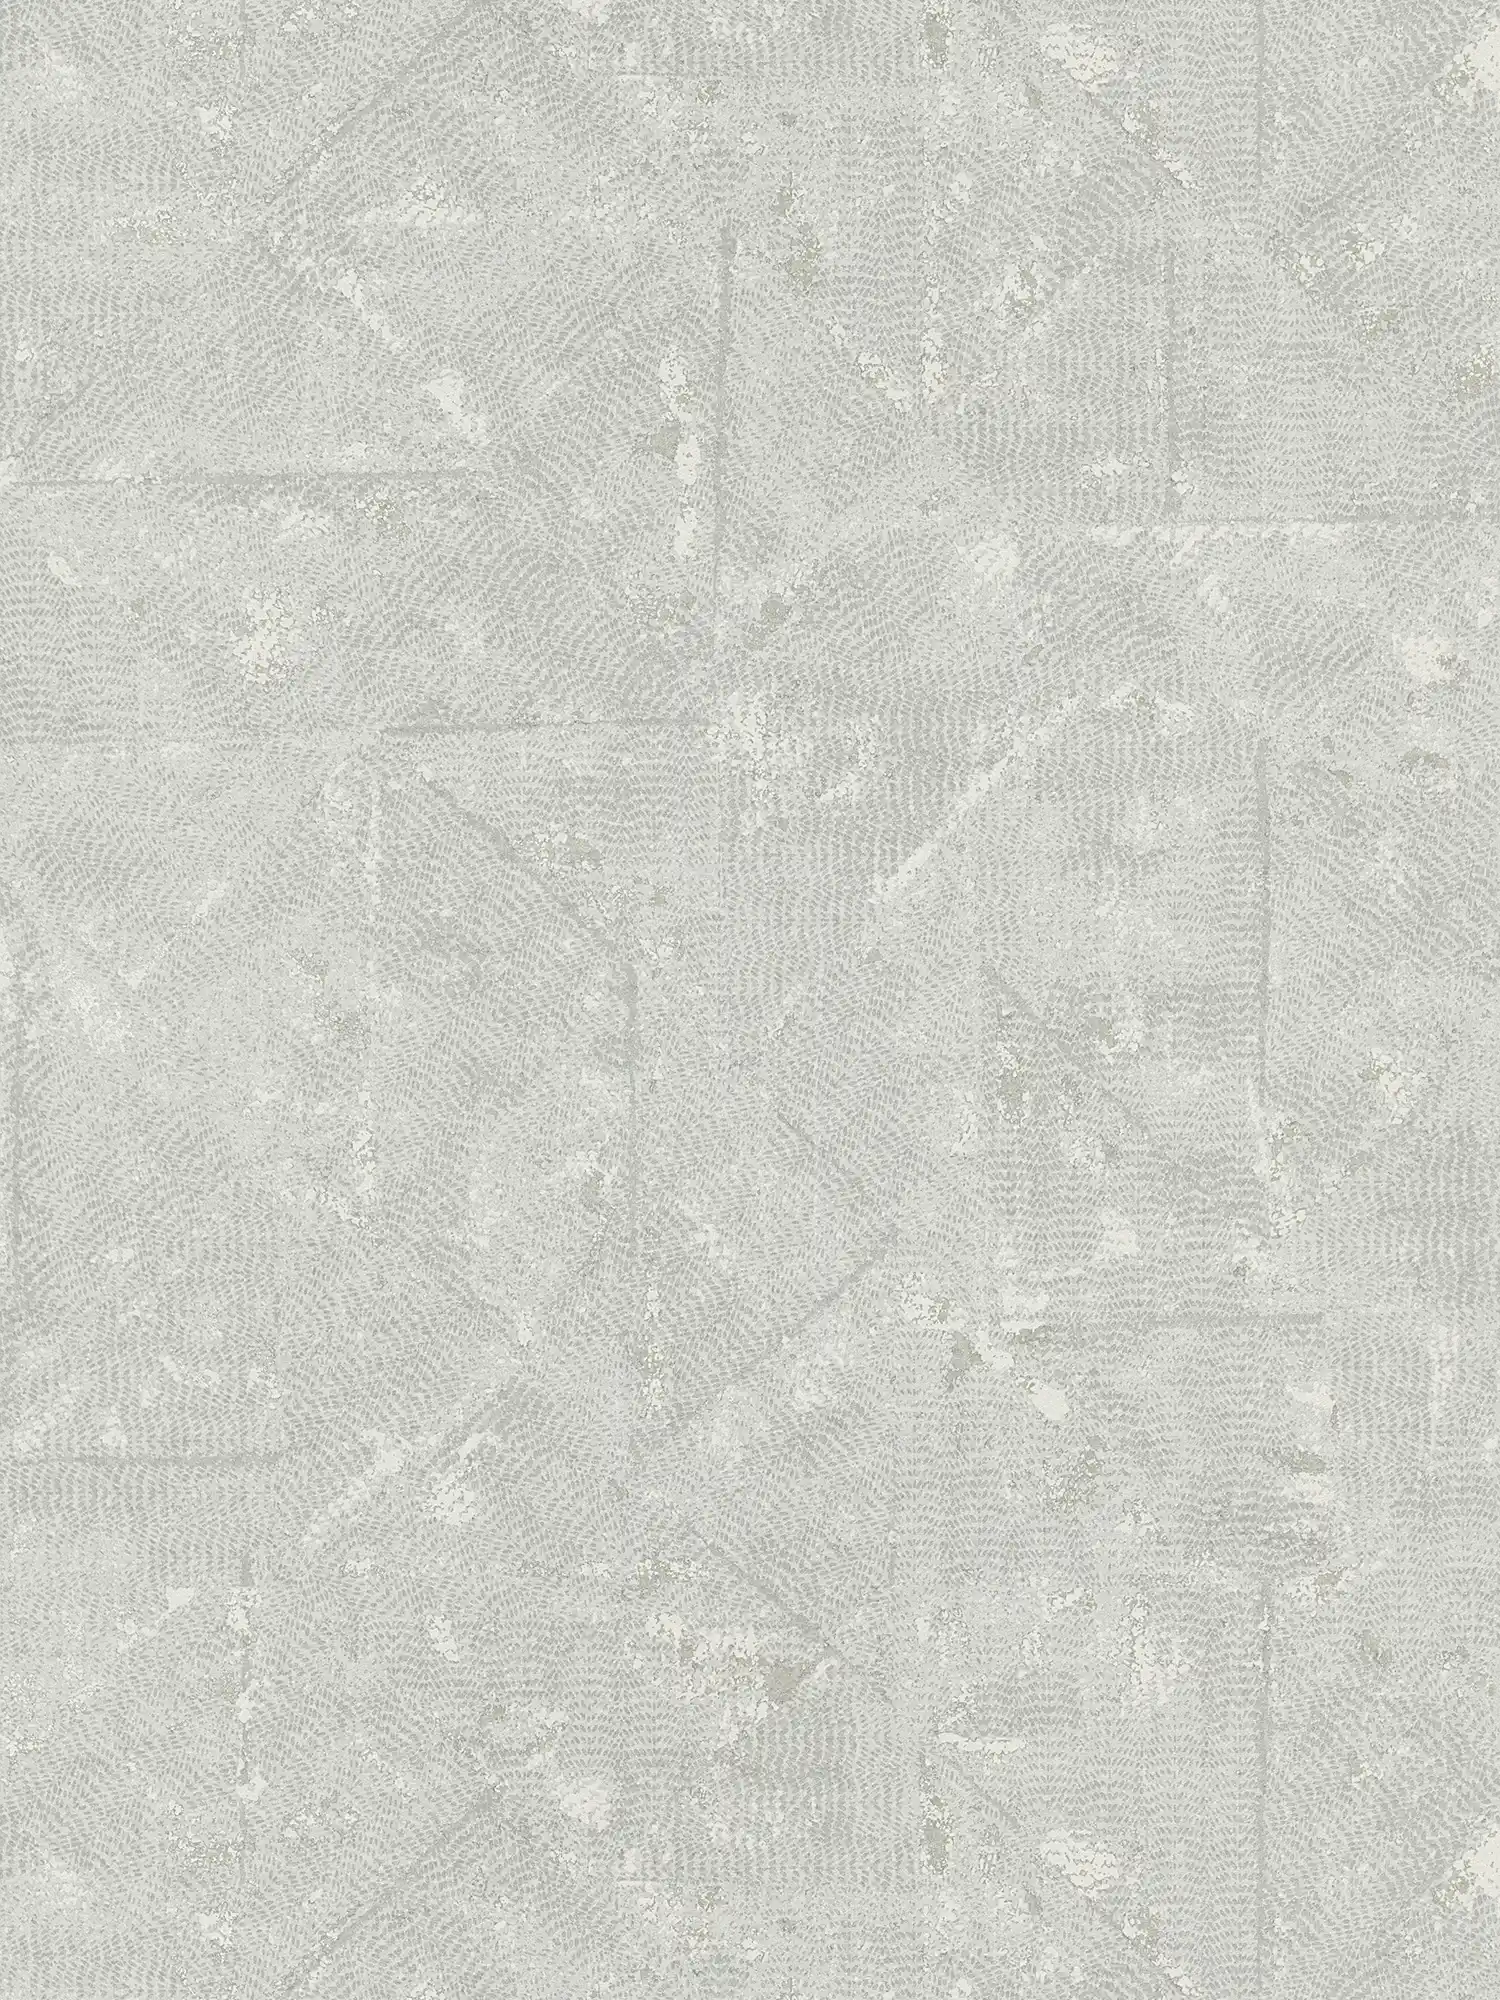 Lichtgrijs effen behang met asymmetrische details - grijs, zilver
